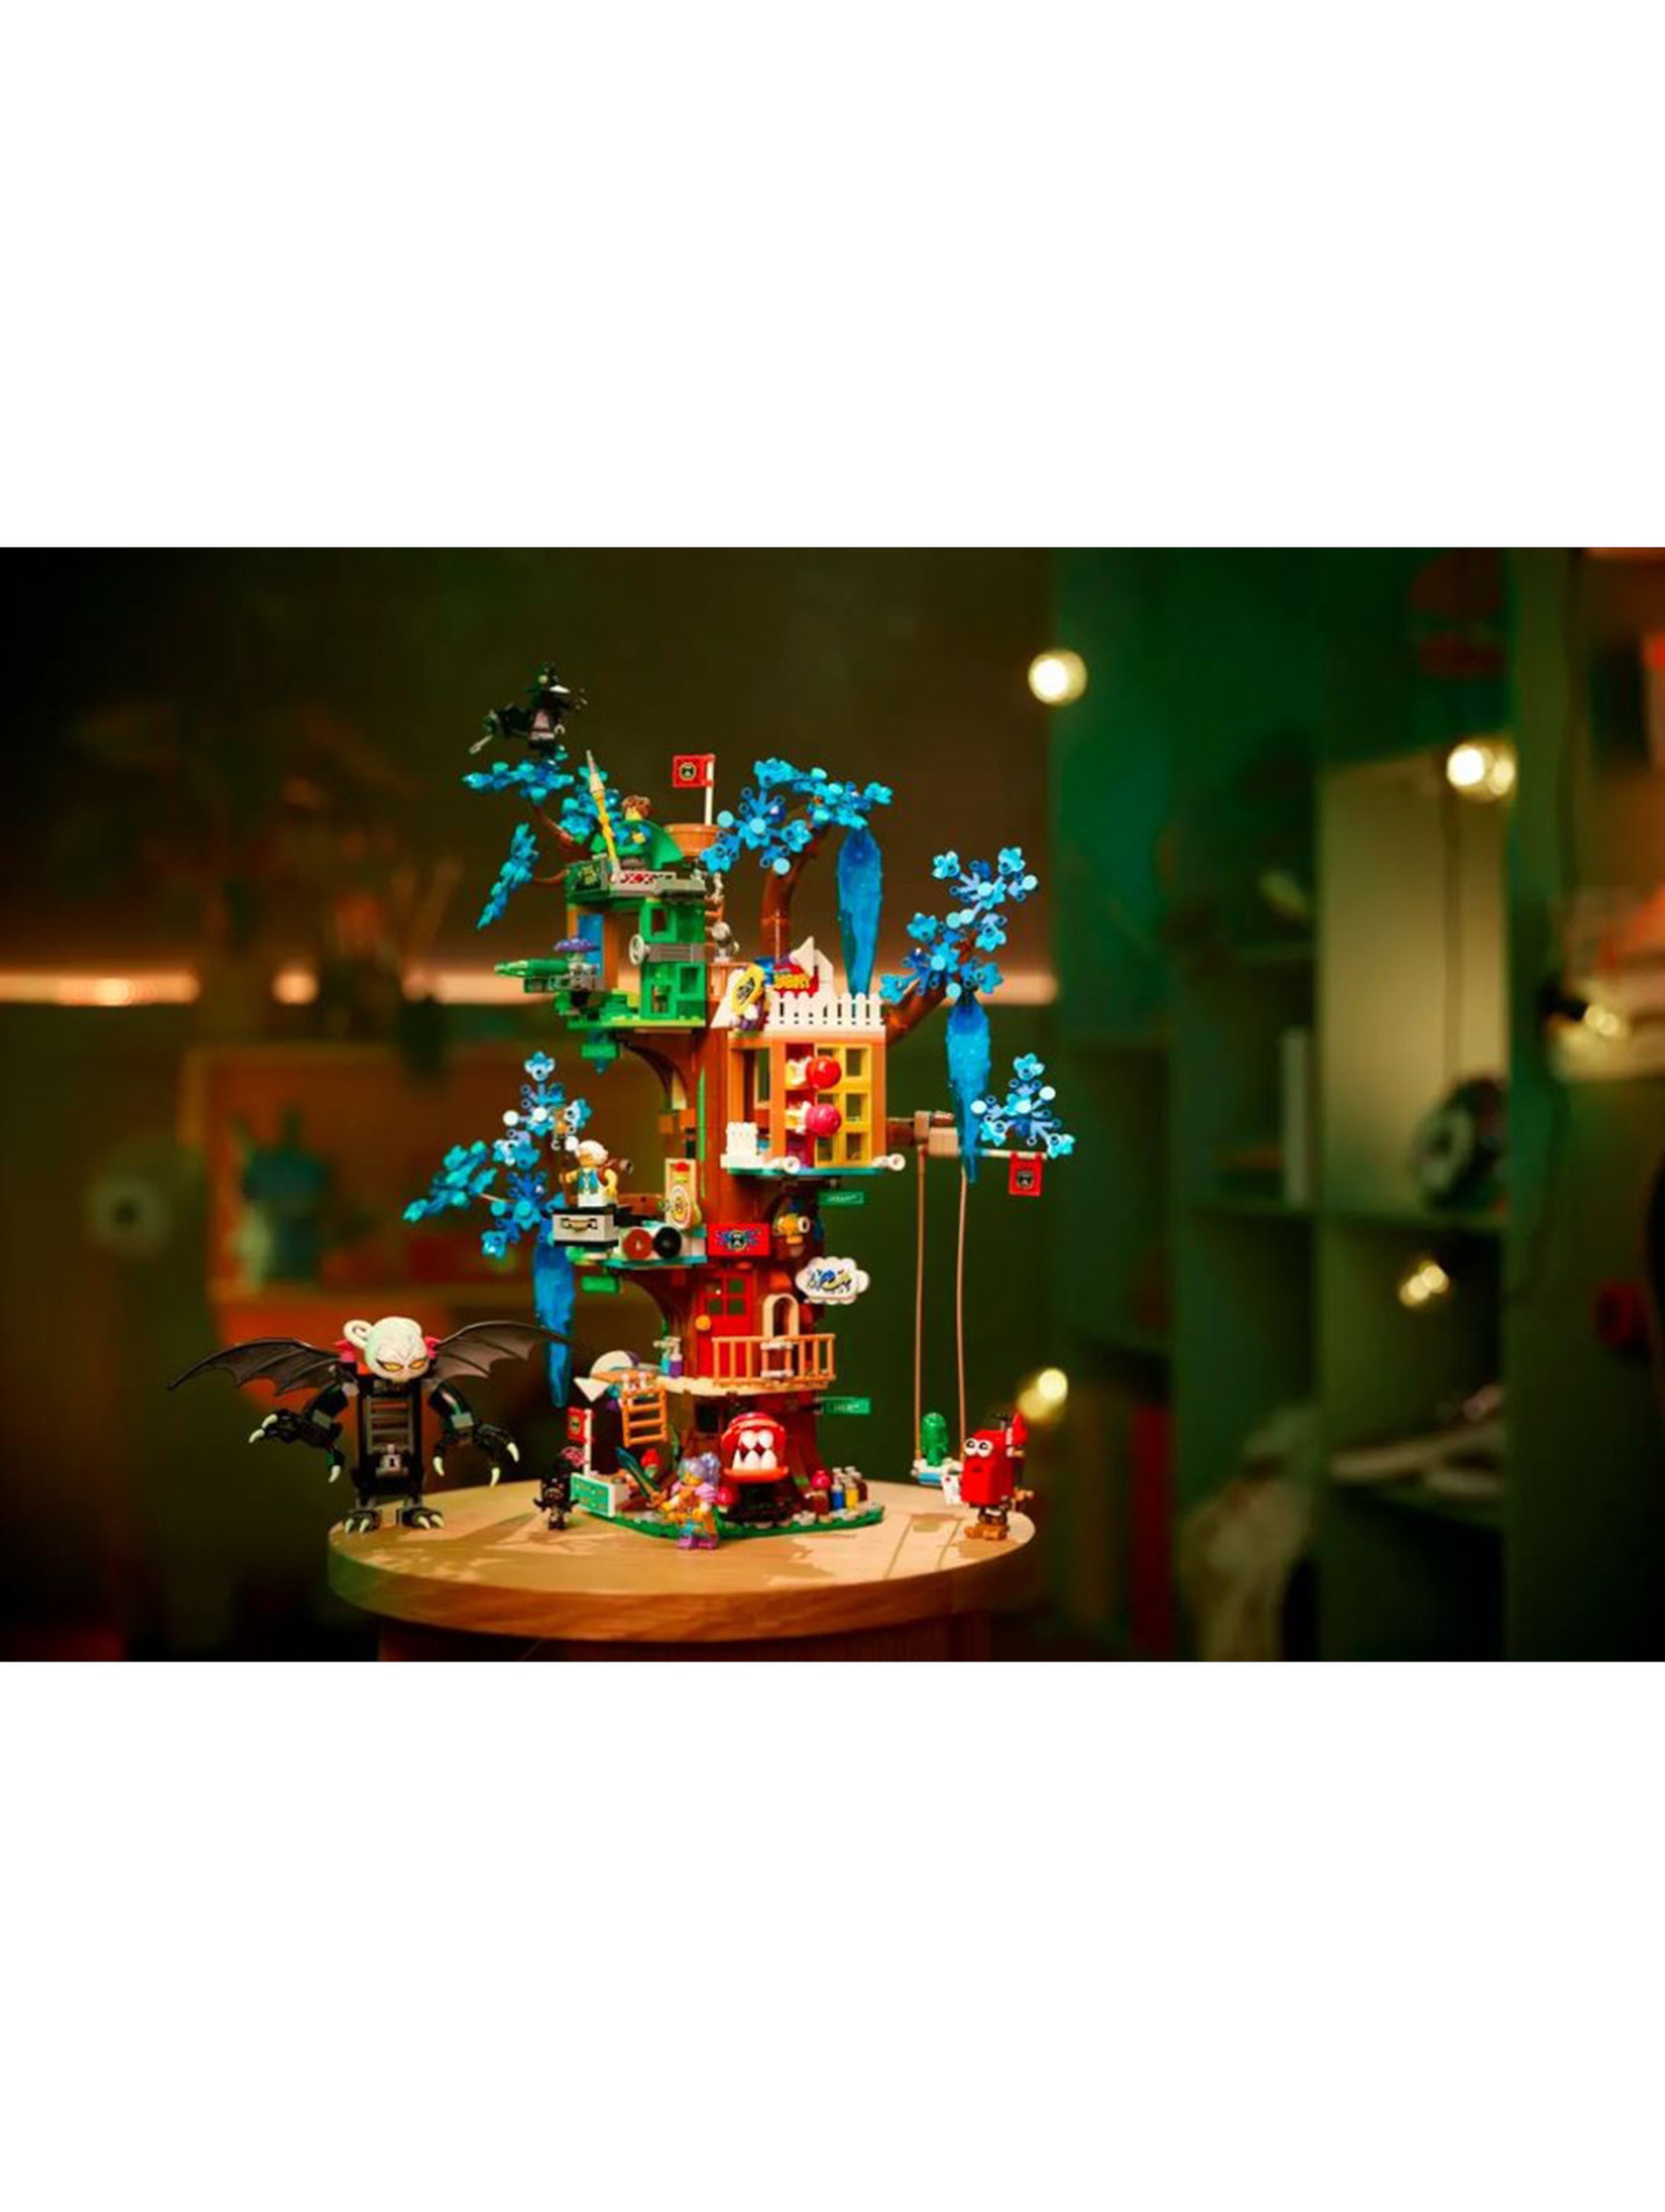 Klocki LEGO DREAMZzz 71461 Fantastyczny domek na drzewie - 1257 elementów, wiek 9 +